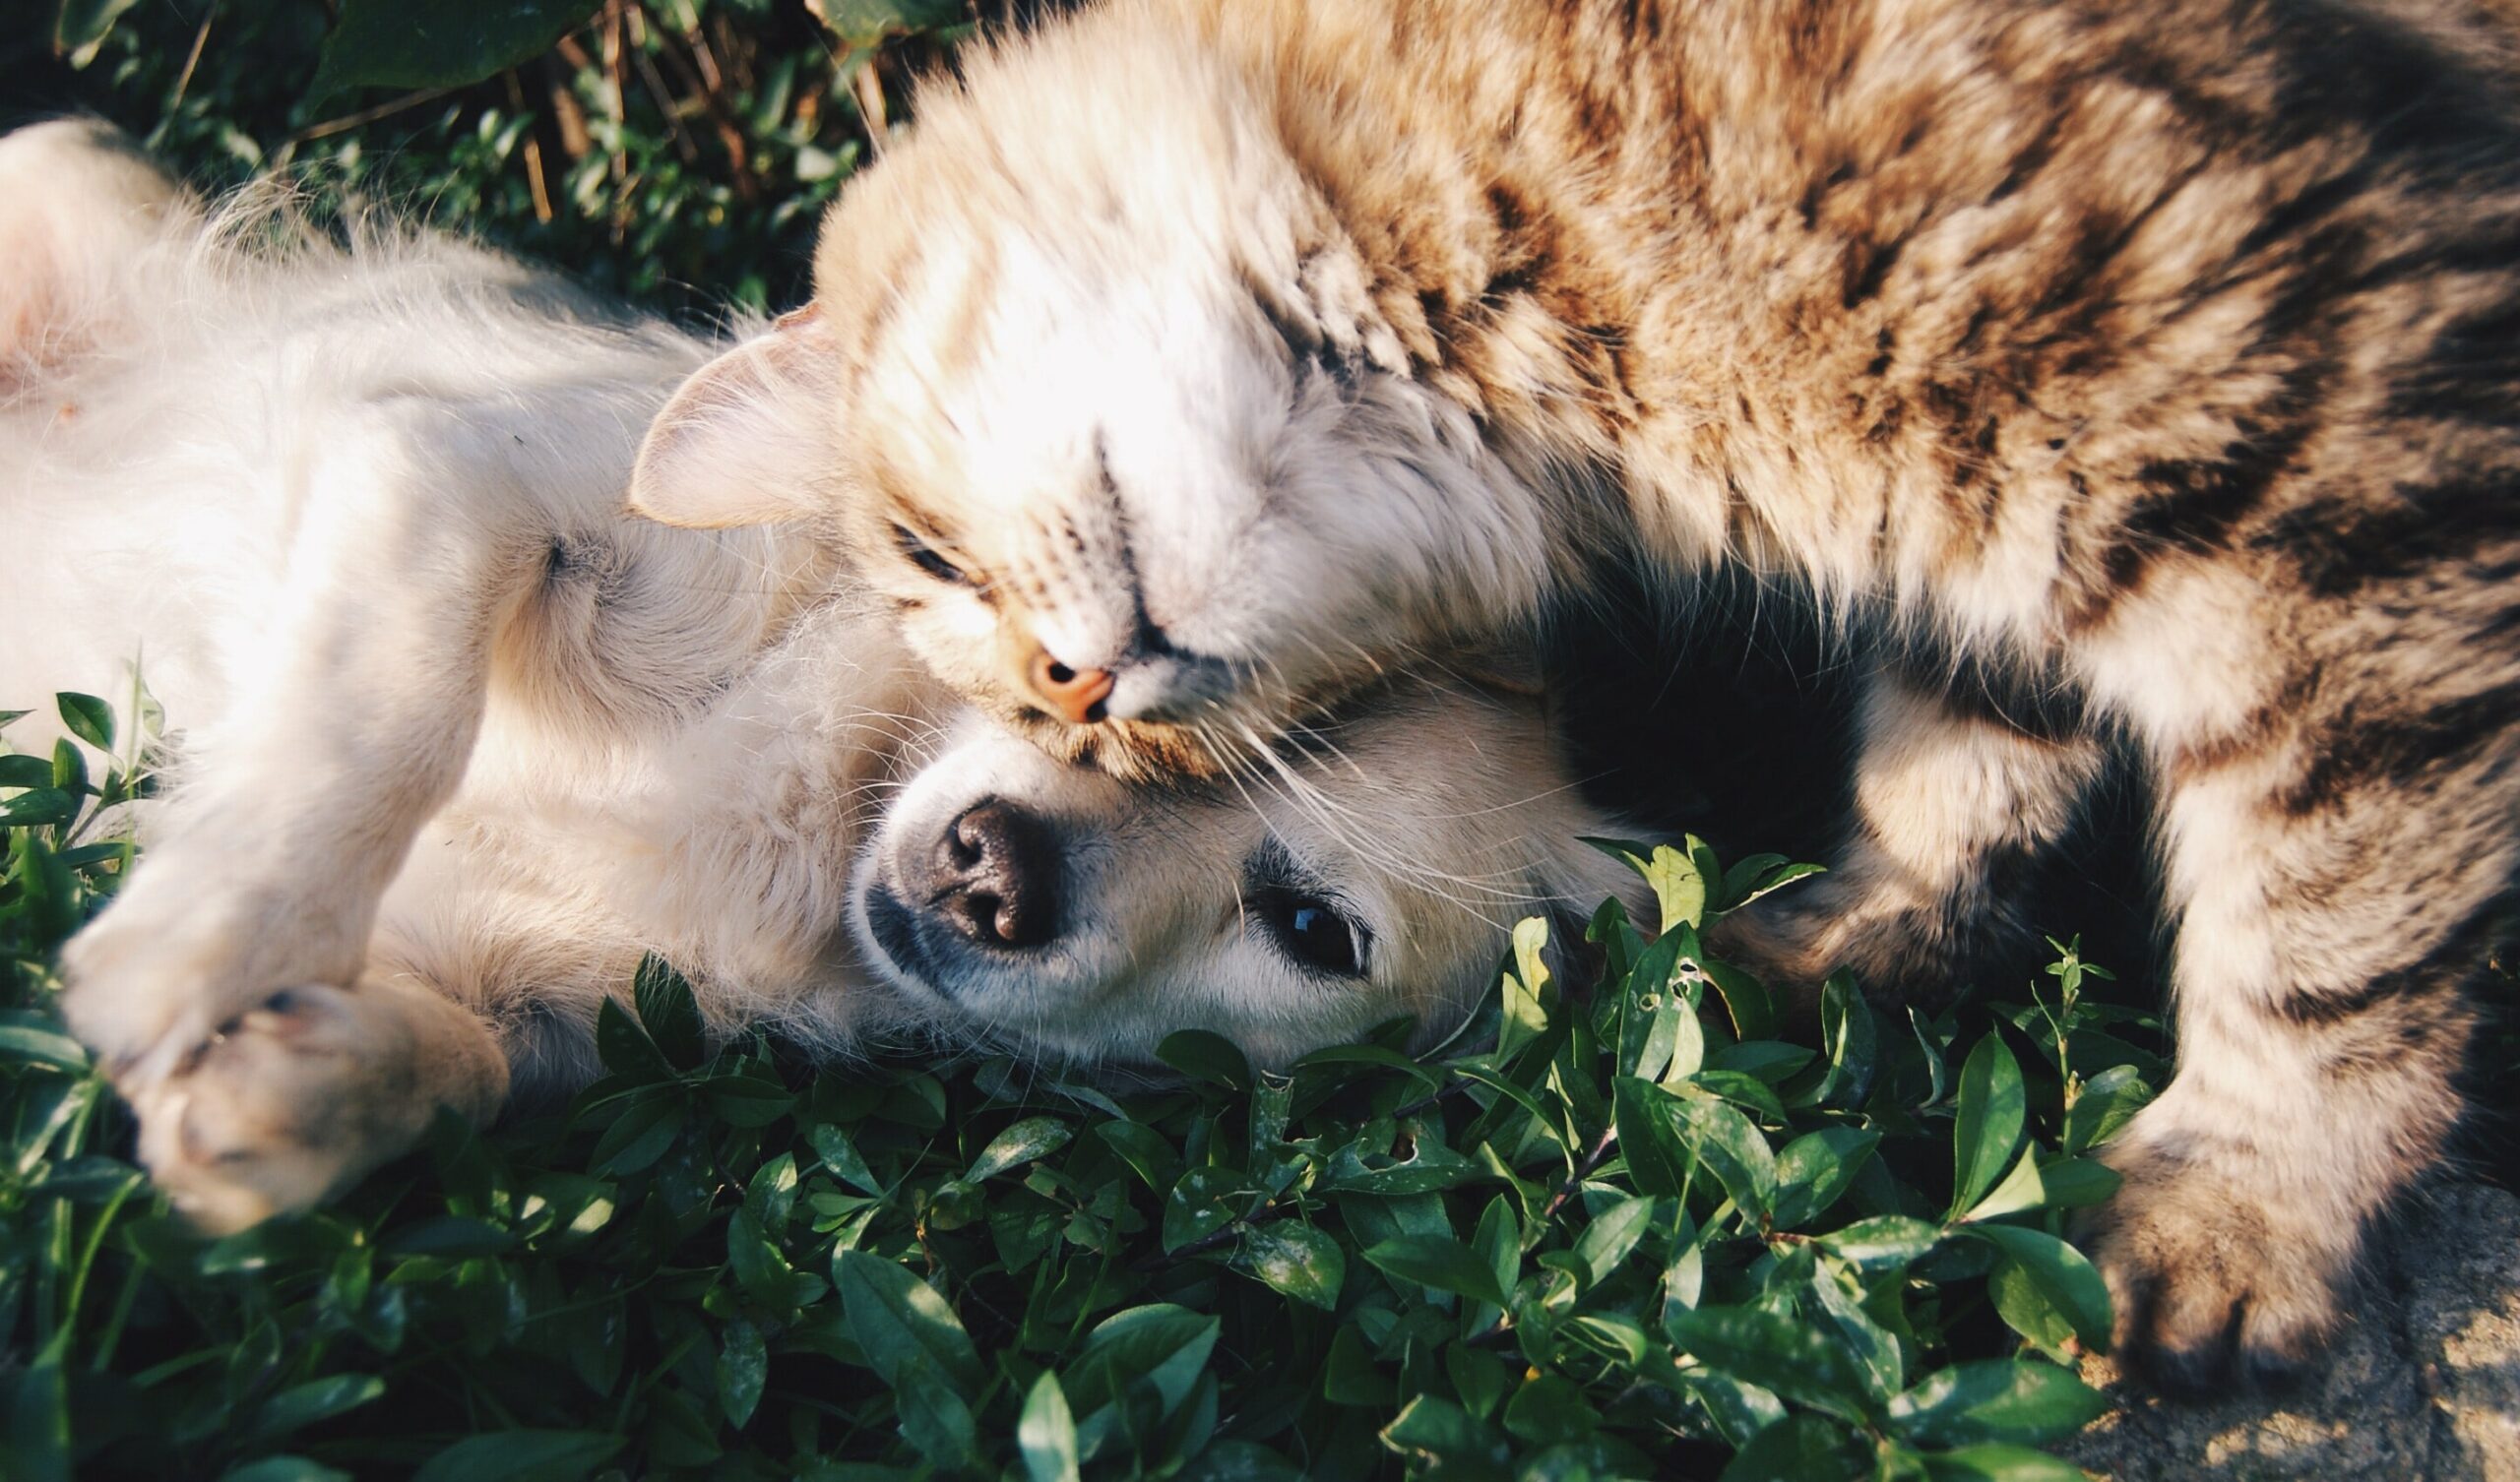 Steckbrief: Wie man sich gut um ein Haustier kümmert